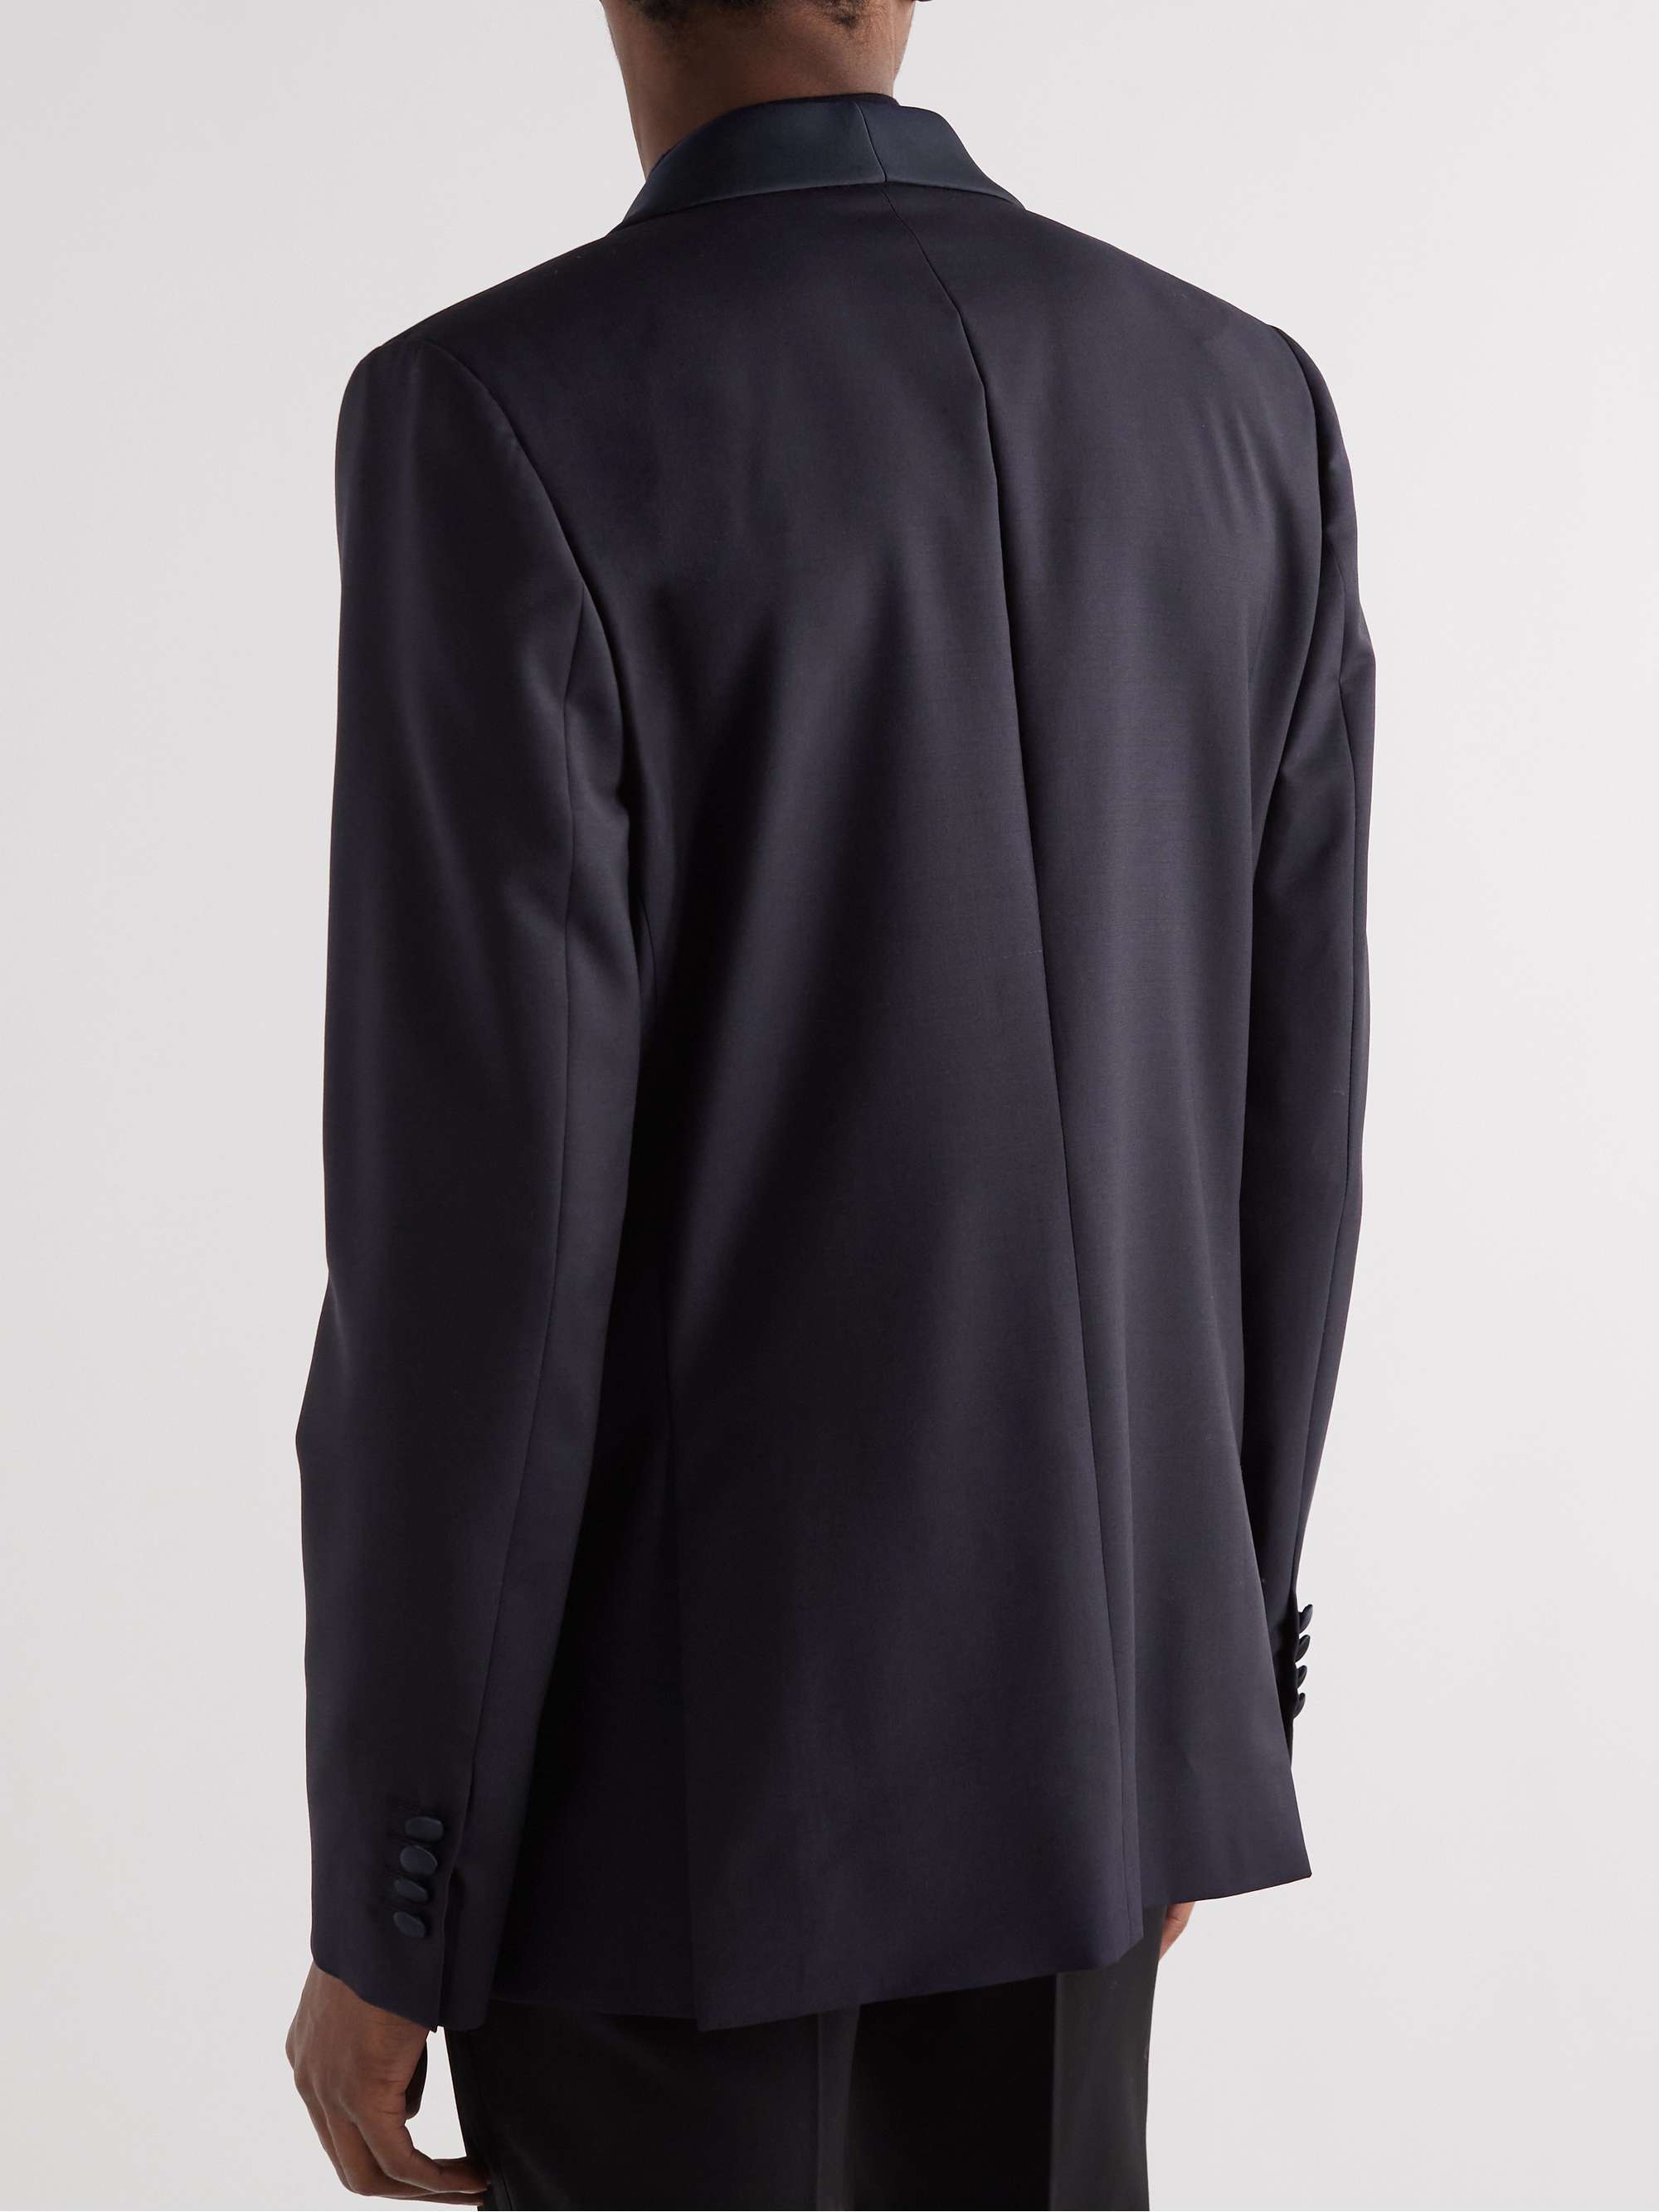 PAUL SMITH Wool-Blend Tuxedo Jacket